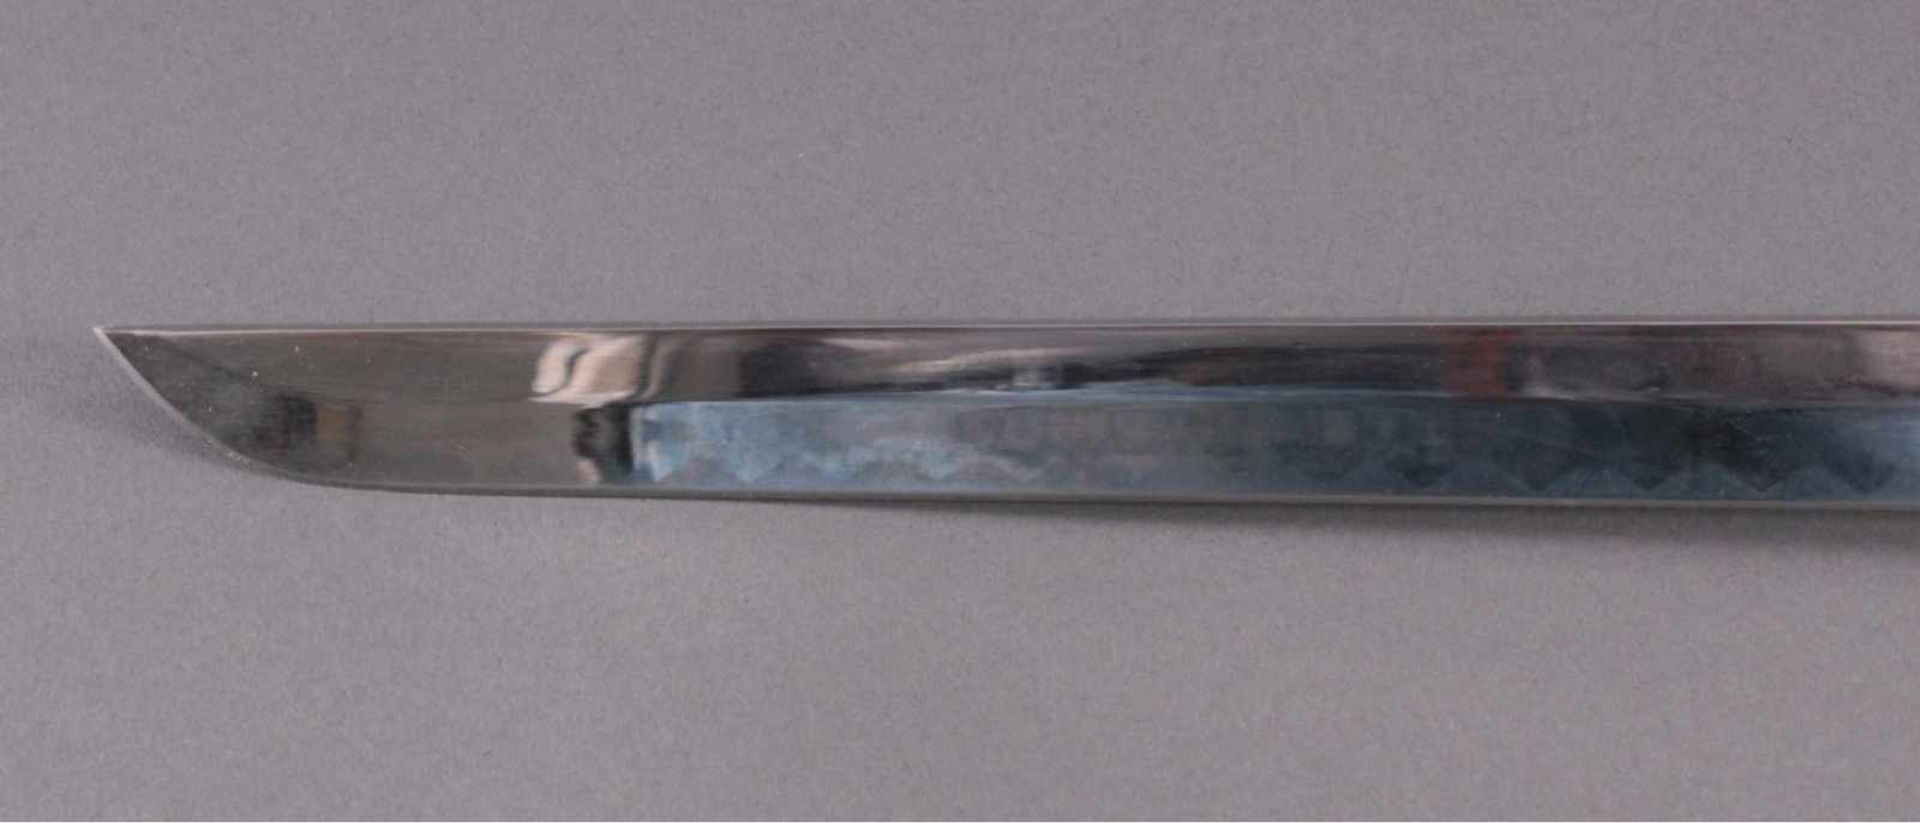 KatanaAuf der Klinge mit Herstellerbezeichnung C. Jul. HerbertzNR.G/48, 440, Scheide aus Holz, ca. - Bild 6 aus 6